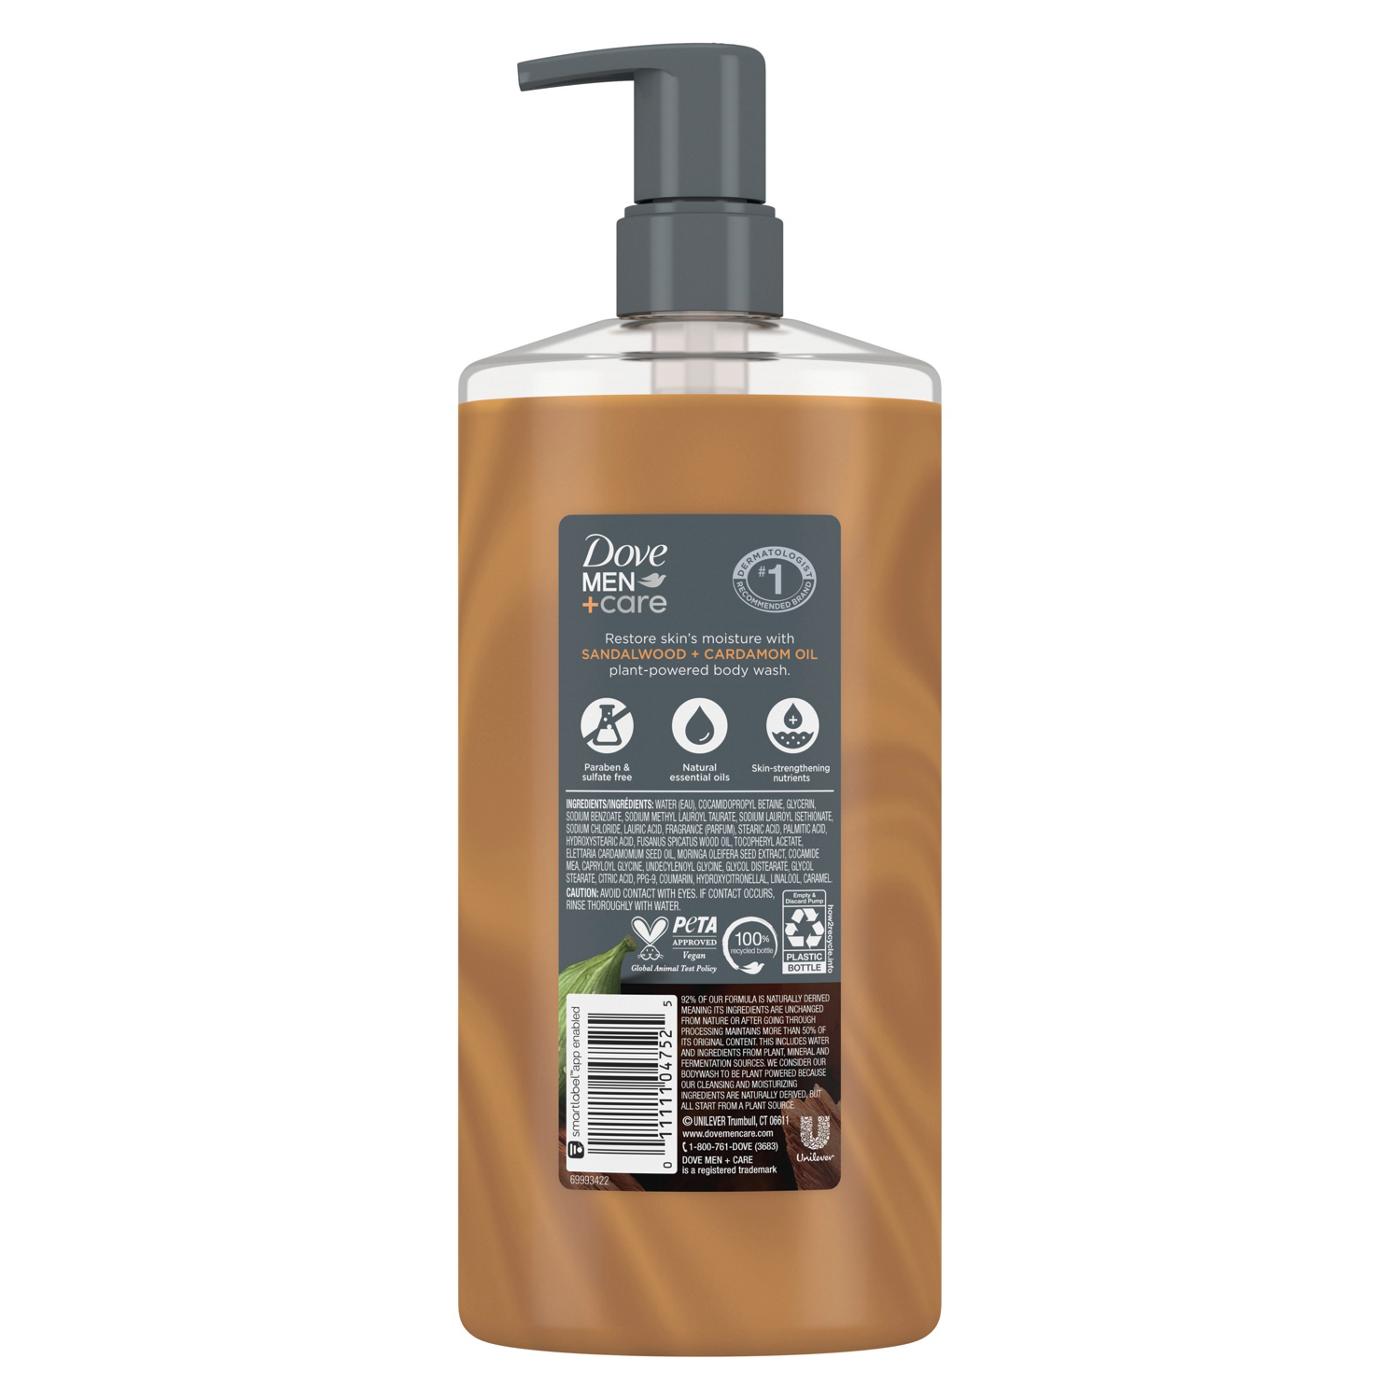 Dove Men+Care Restore Body Wash - Sandalwood + Cardamom Oil ; image 2 of 2